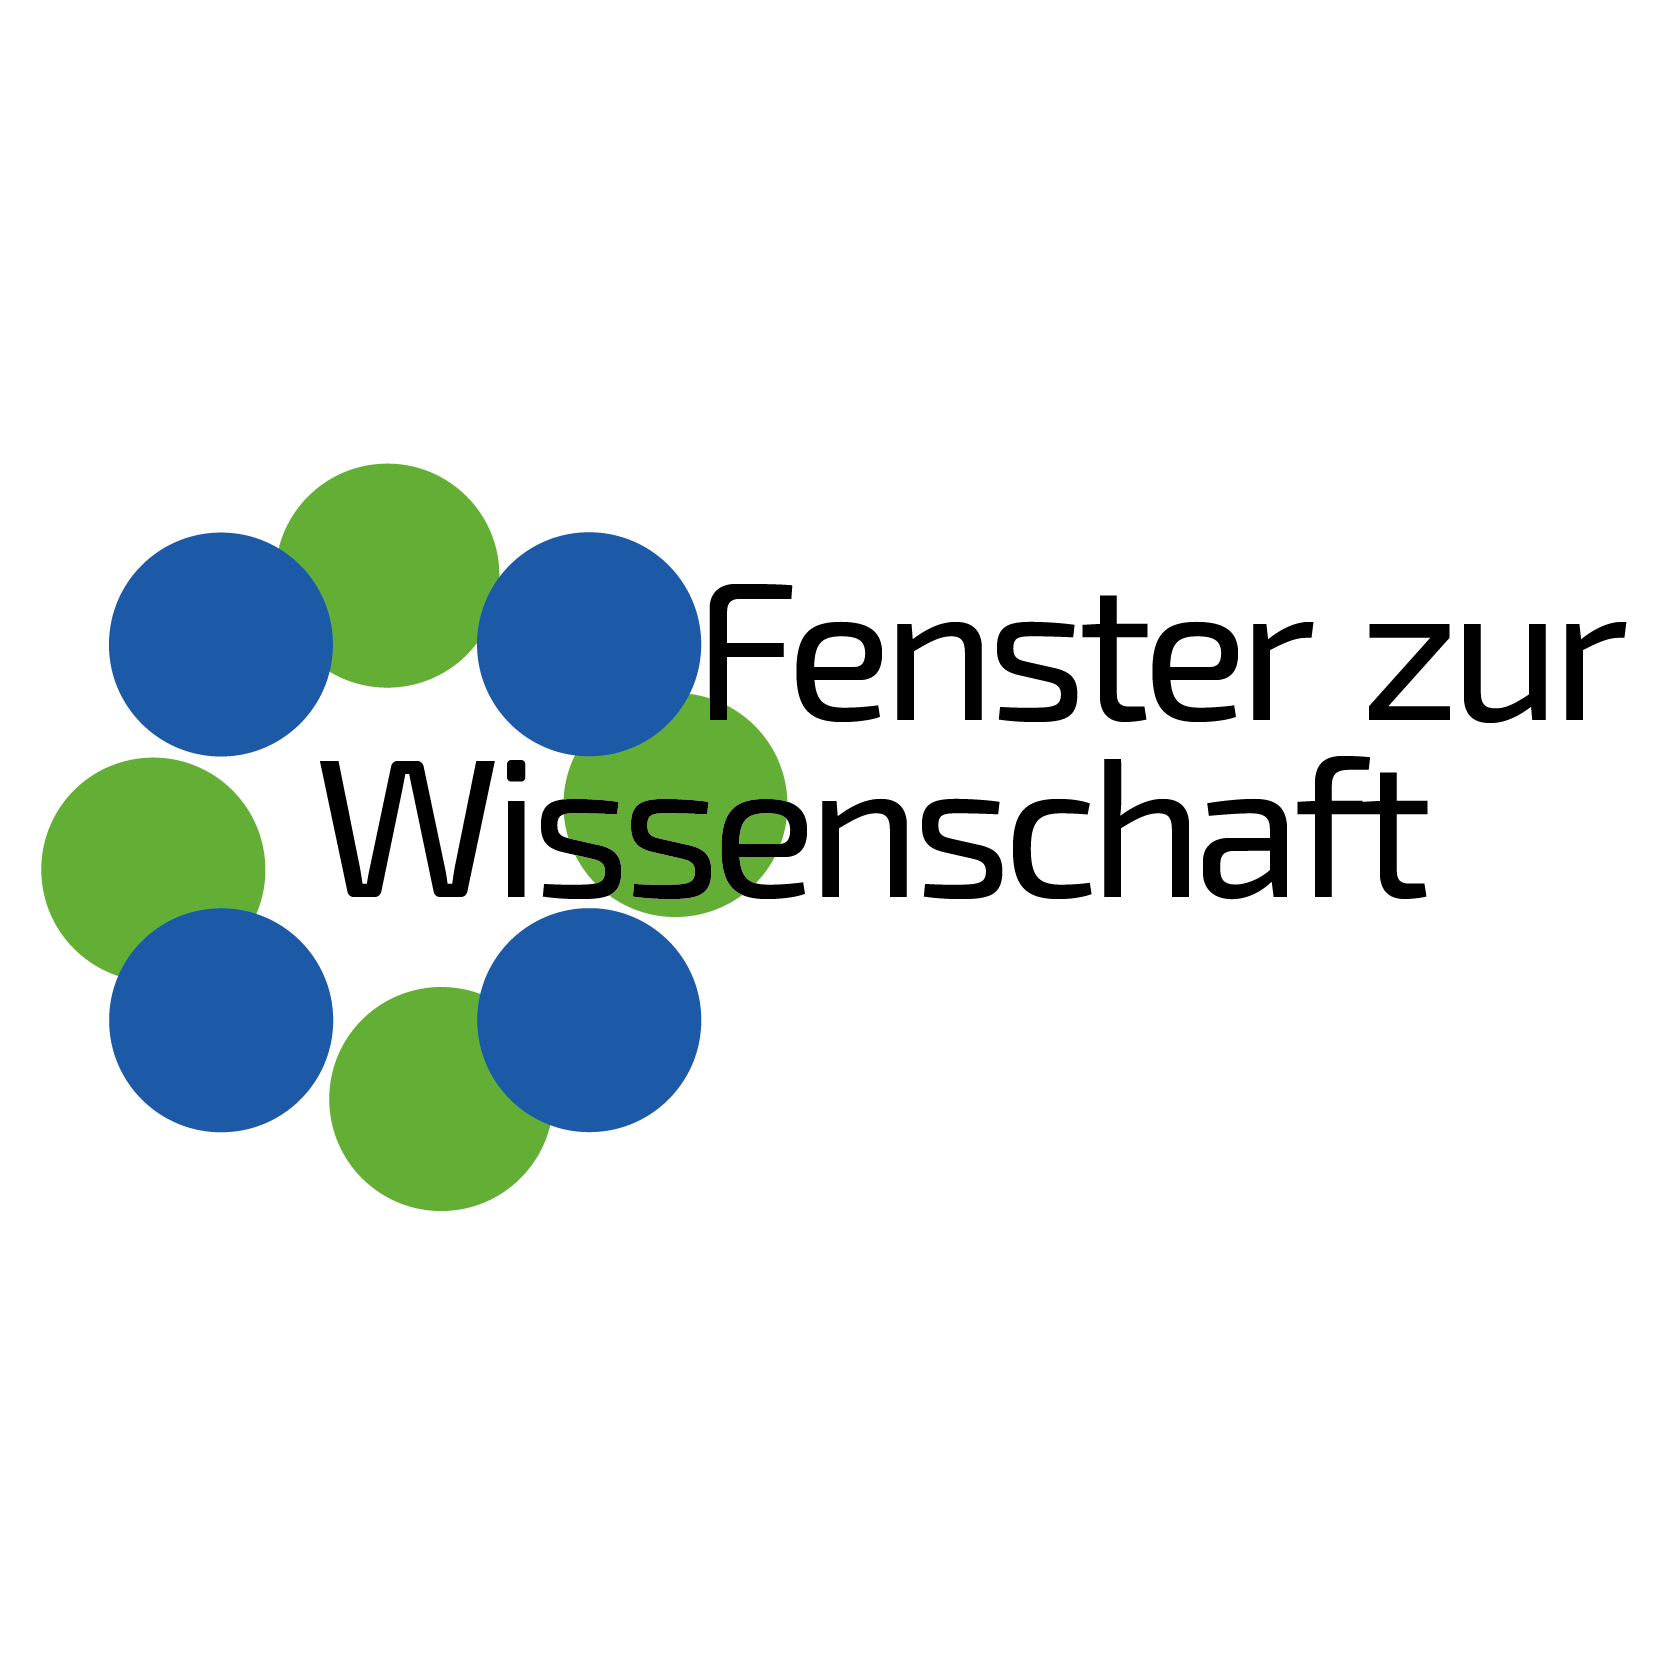 Fenster zur Wissenschaft - Logo